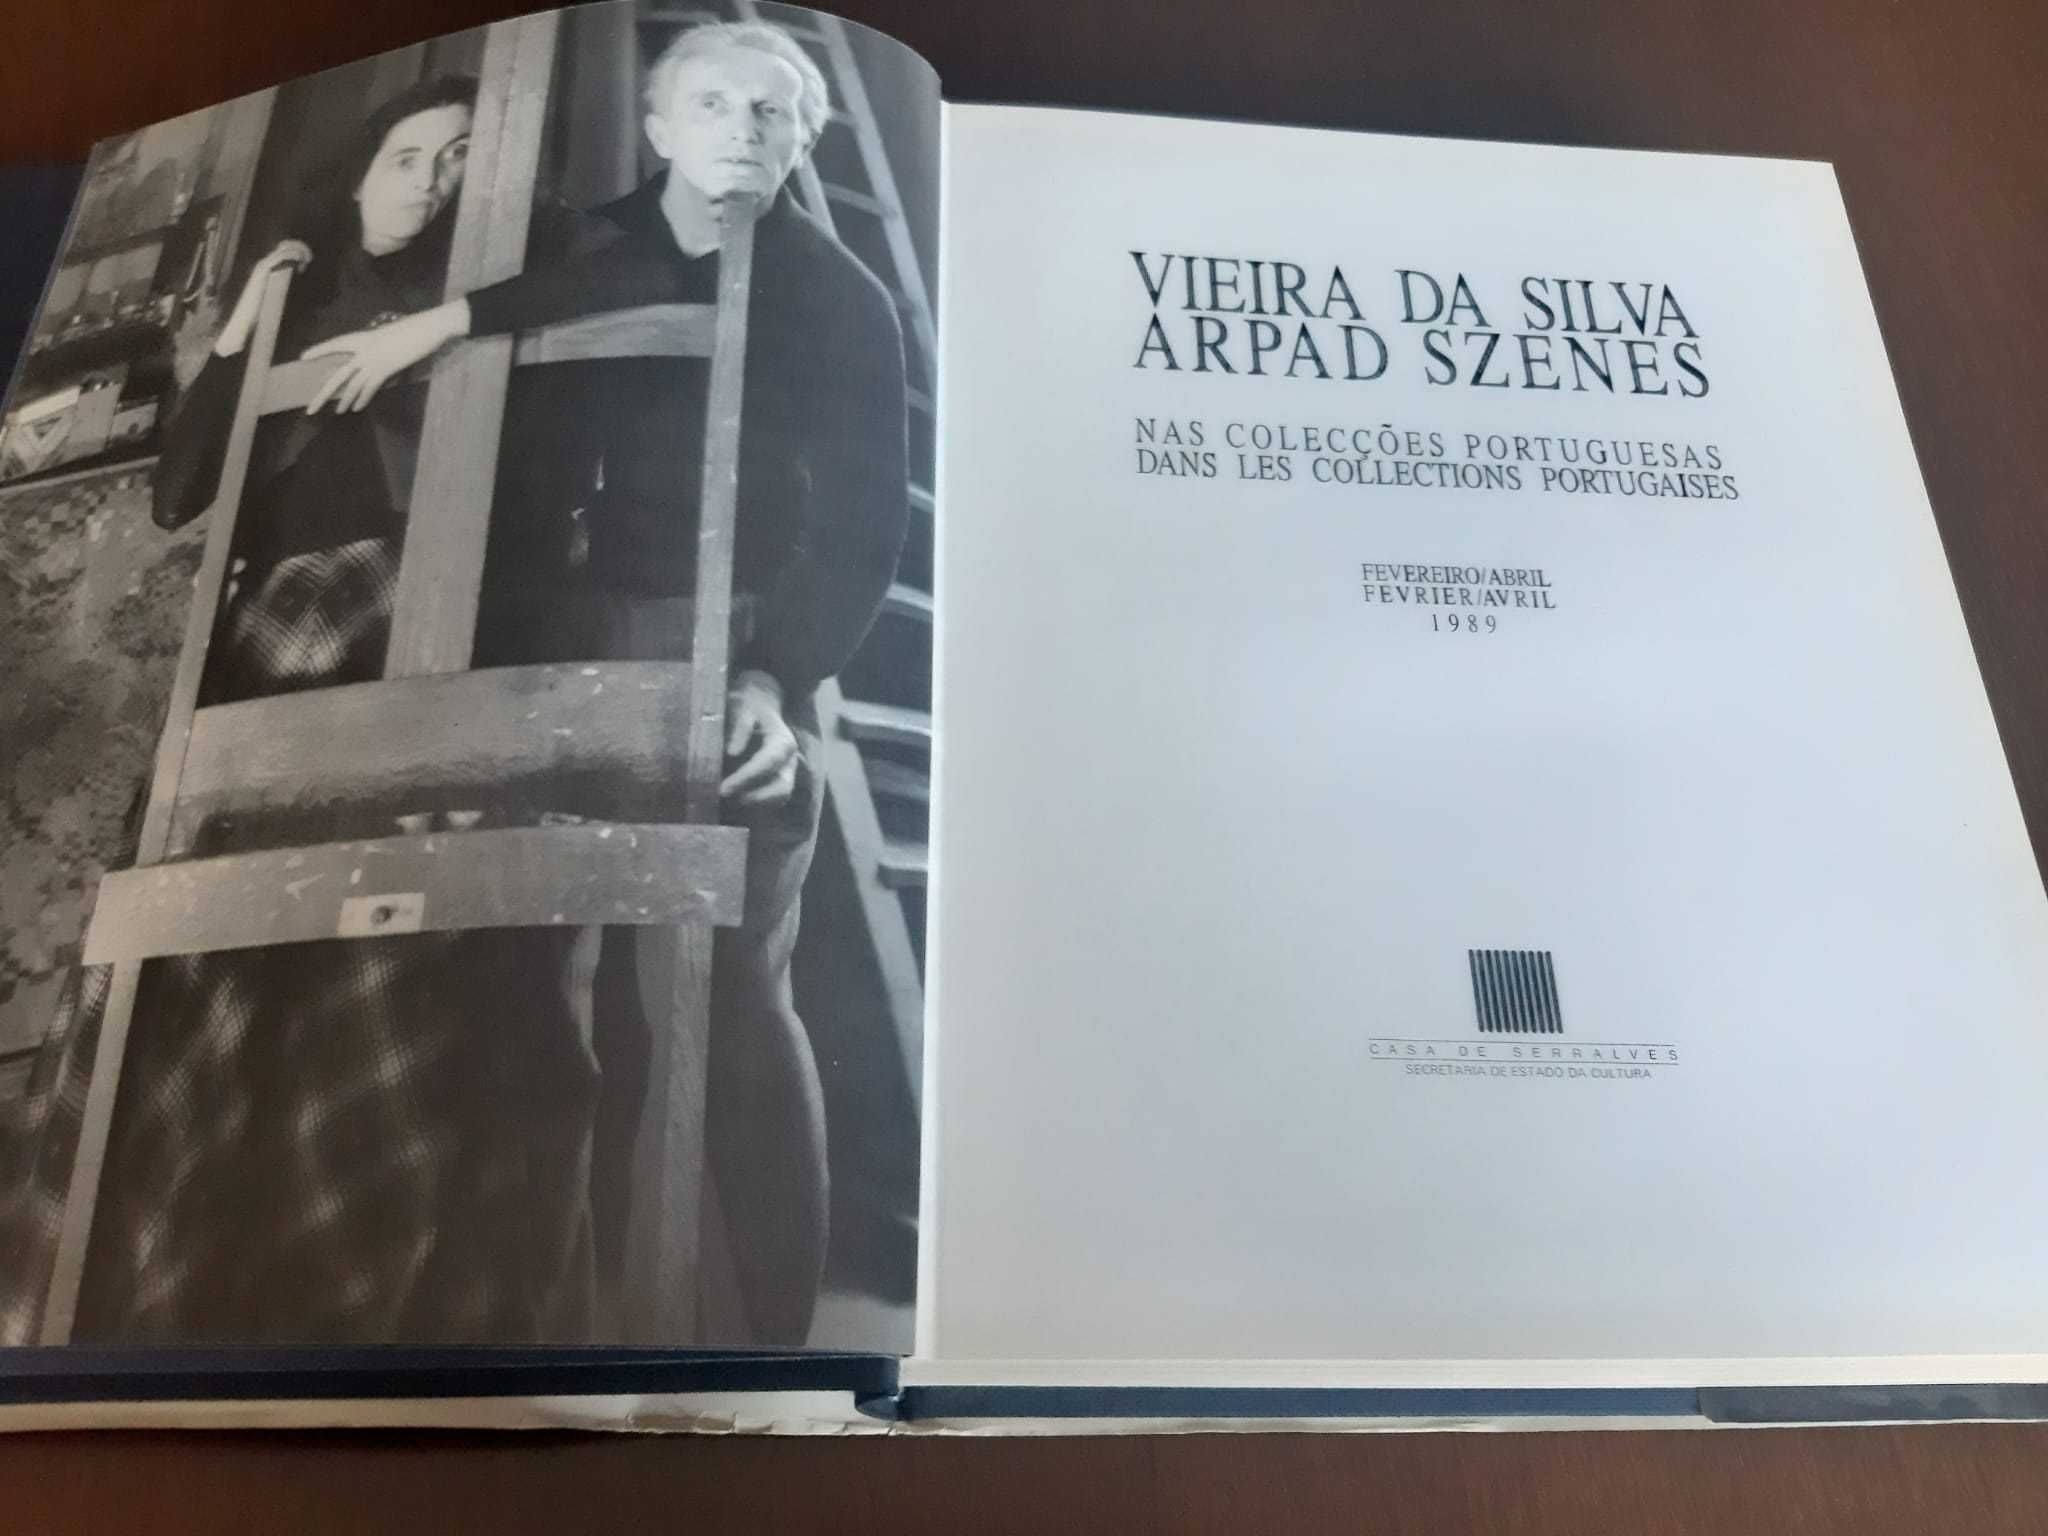 Livro  Vieira da Silva e Arpad Szenes nas Coleções Portuguesas, 1989,